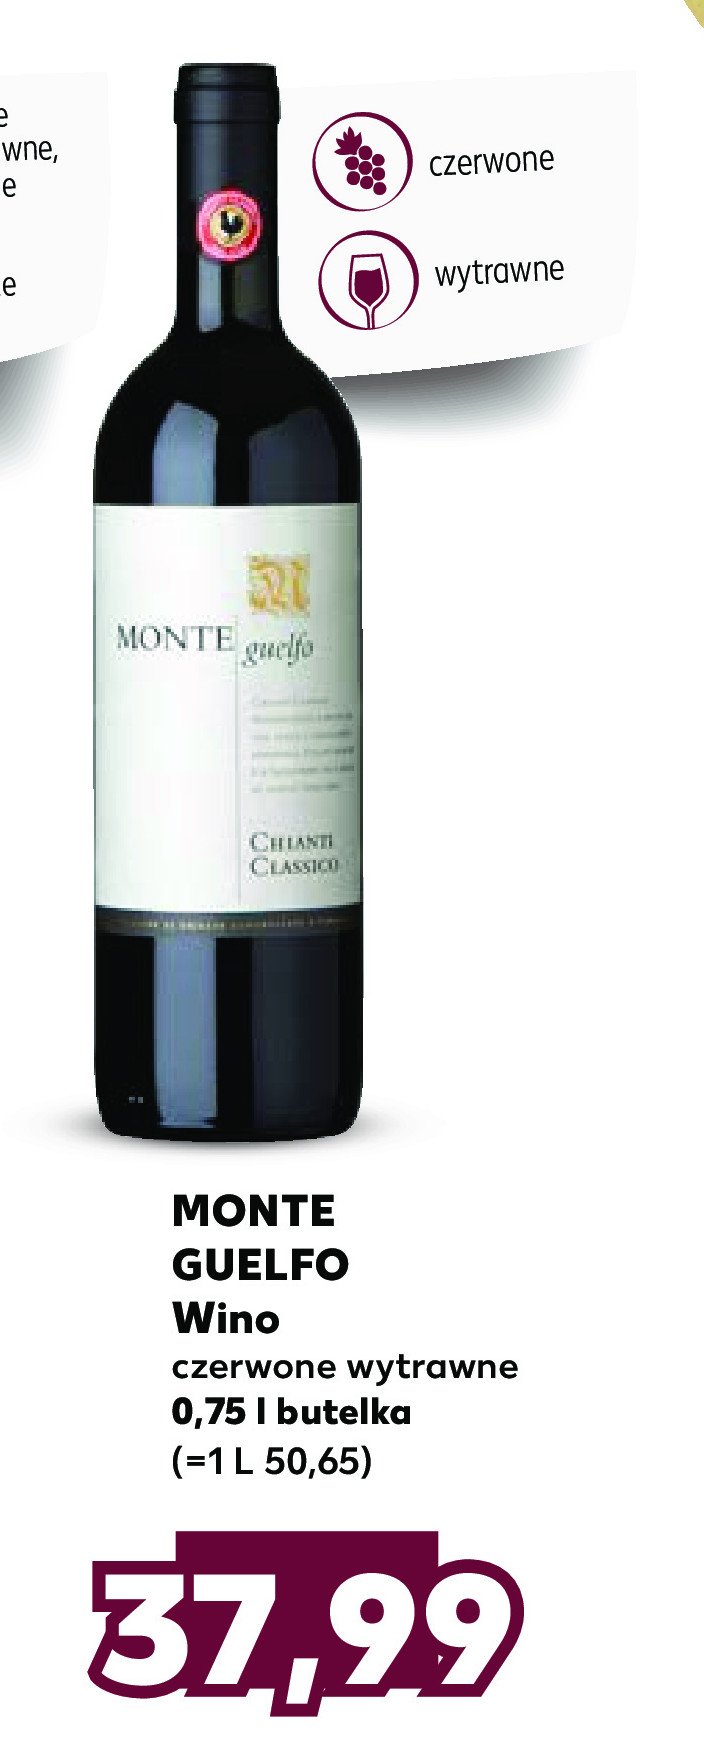 Wino MONTE GUELFO promocja